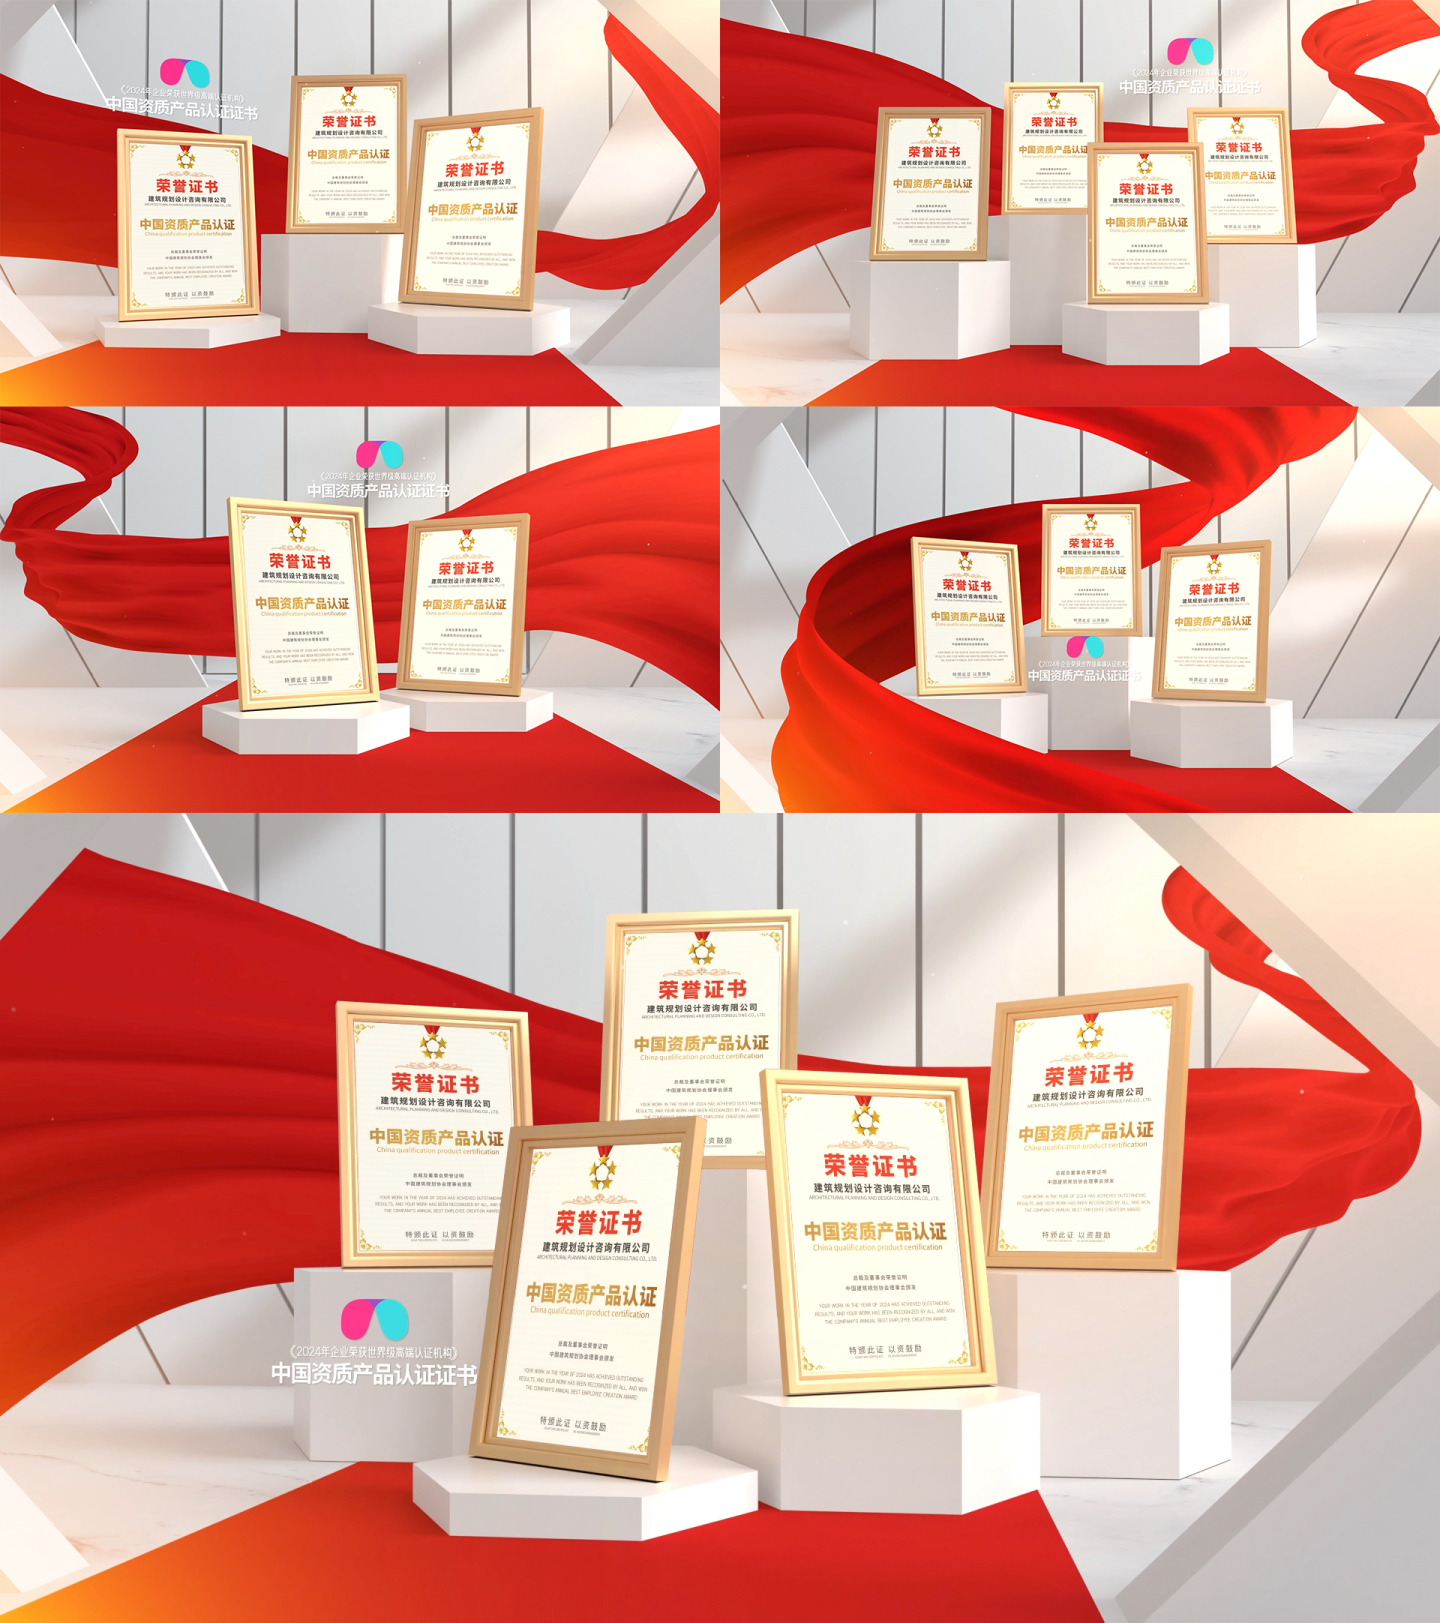 高端红绸荣誉证书专利奖牌展示ae模板